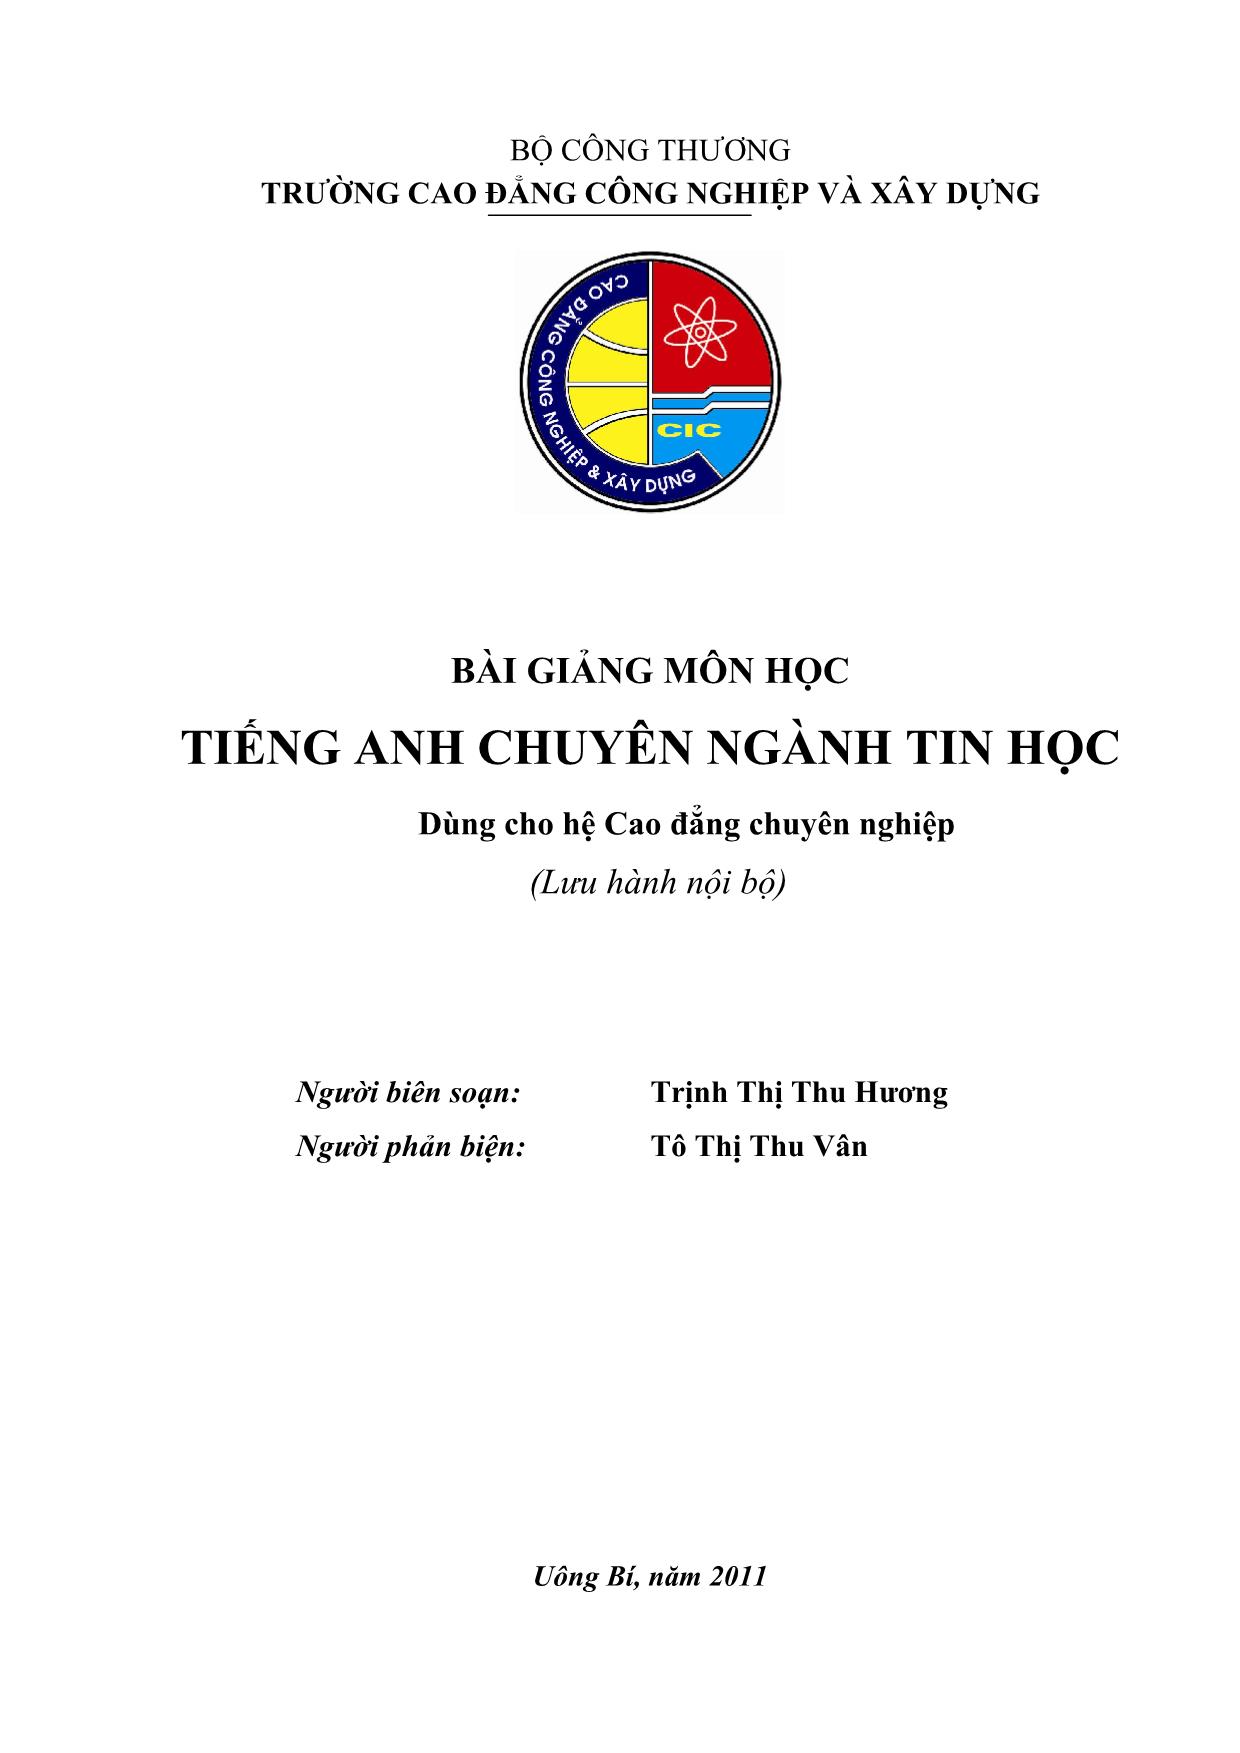 Bài giảng Tiếng Anh chuyên ngành Tin học - Trịnh Thị Thu Hương trang 1